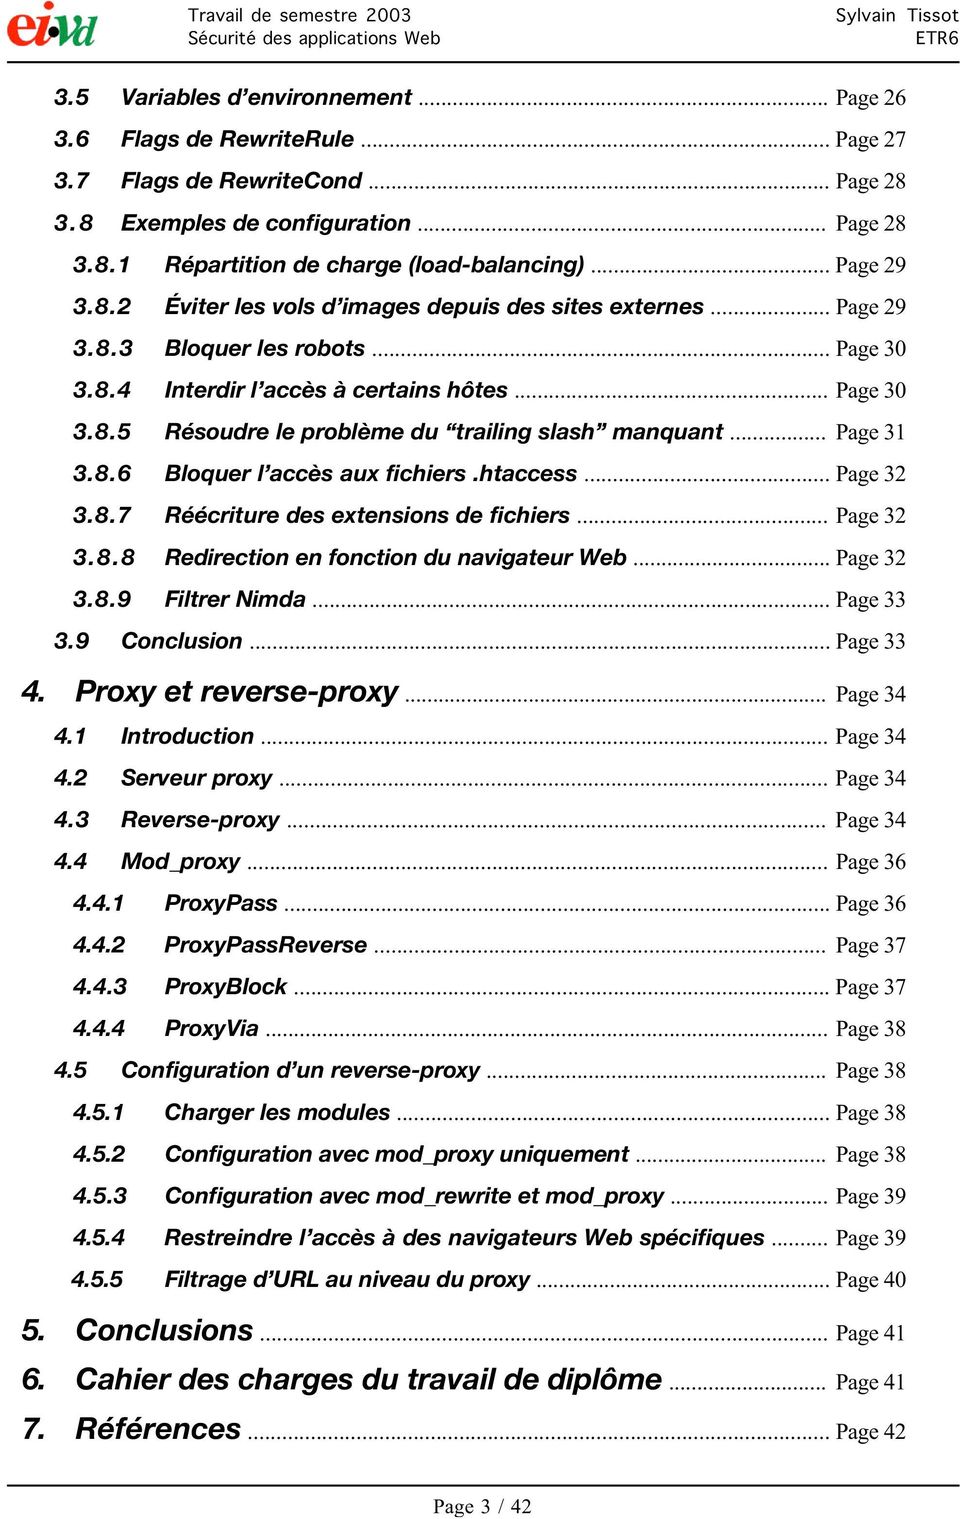 .. Page 31 3.8.6 Bloquer l accès aux fichiers.htaccess... Page 32 3.8.7 Réécriture des extensions de fichiers... Page 32 3.8.8 Redirection en fonction du navigateur Web... Page 32 3.8.9 Filtrer Nimda.